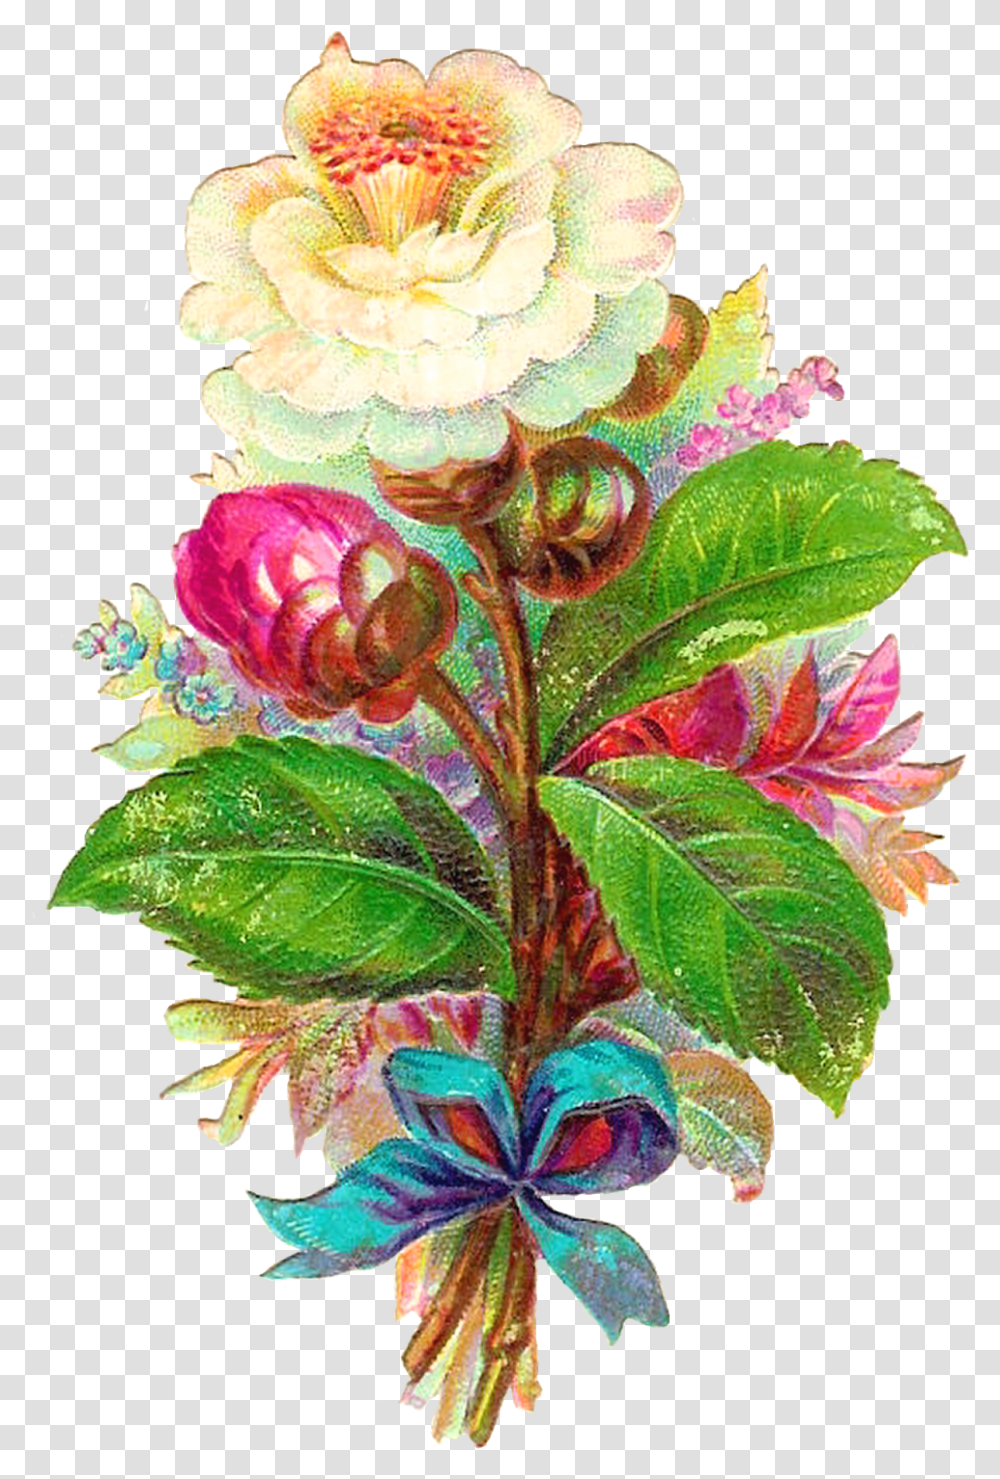 Antique Images Digital Flower White Camellia Vintage Clip Art, Plant, Geranium, Flower Arrangement, Flower Bouquet Transparent Png